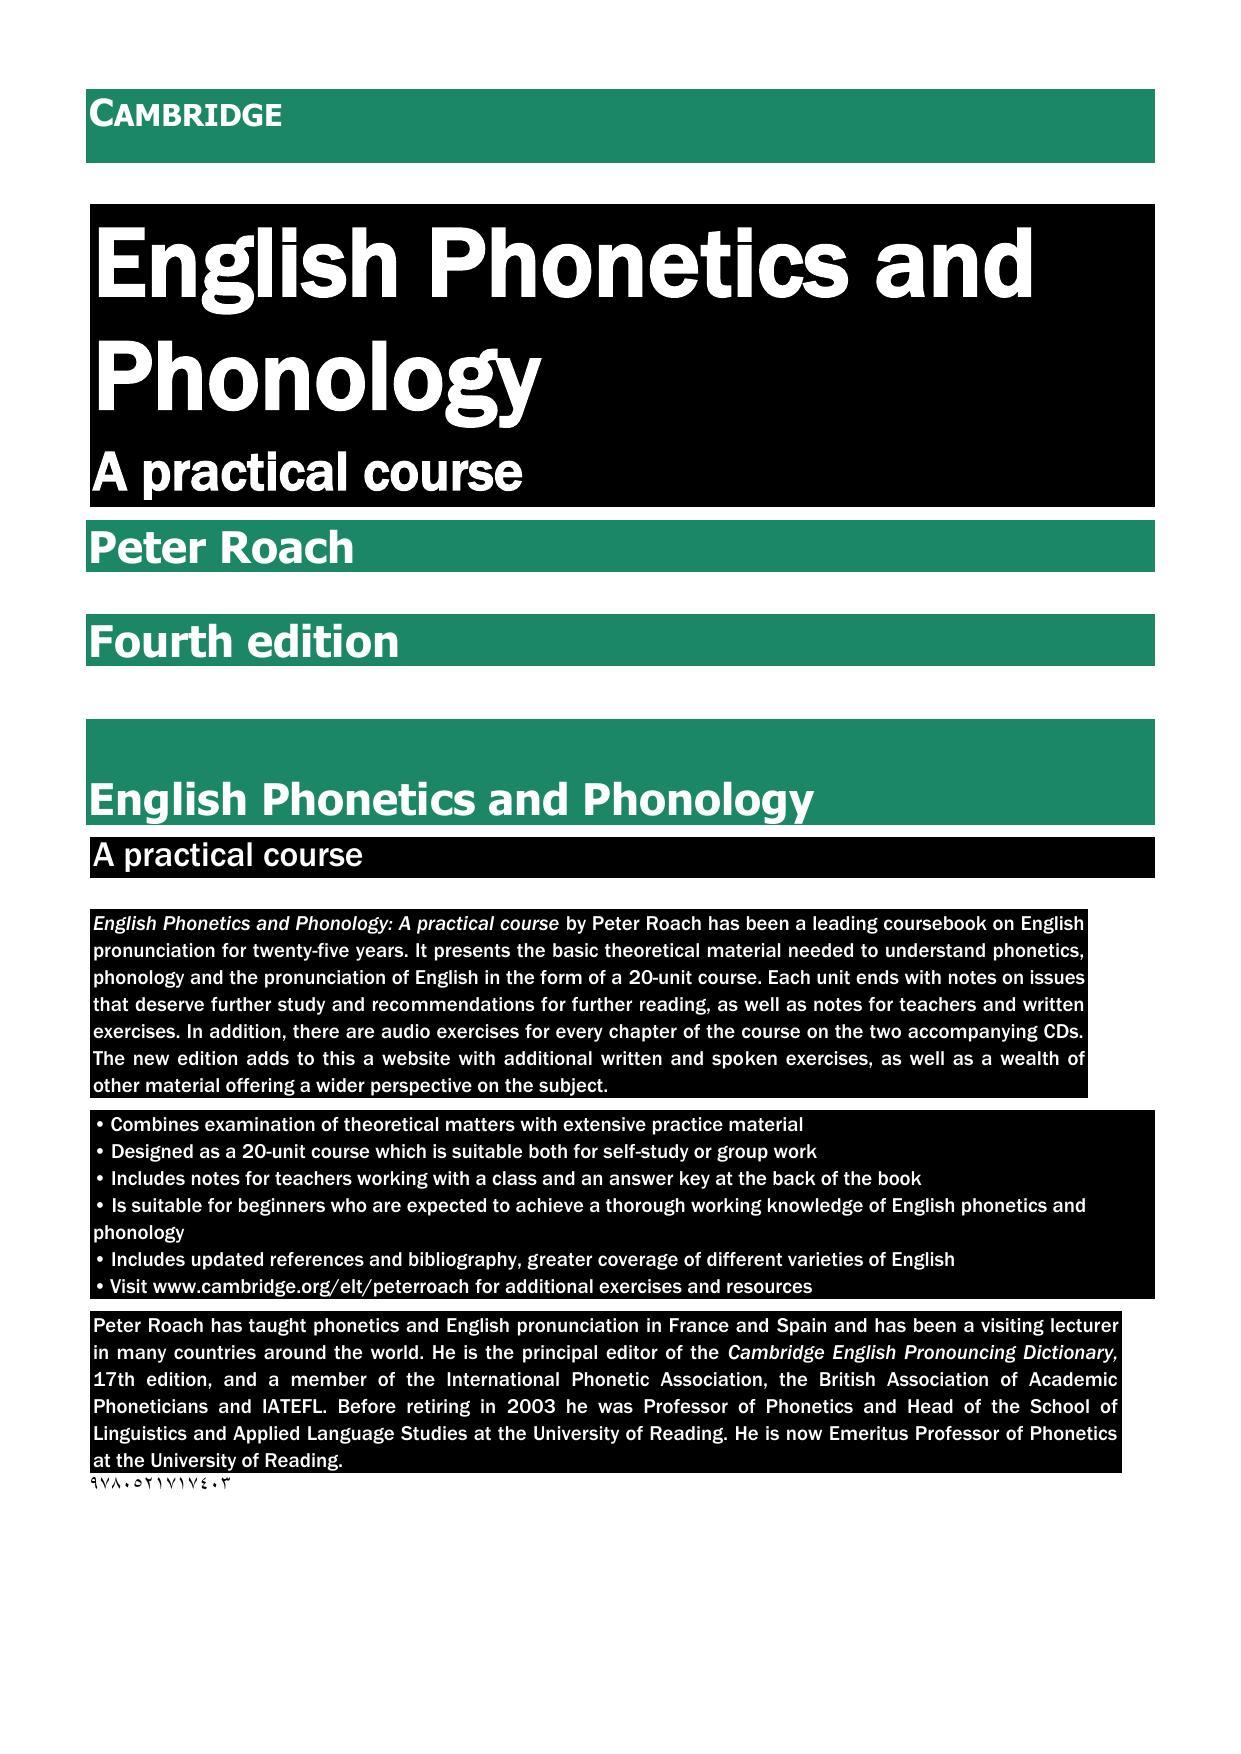 CAMBRIDGE English Phonetics and Phonology 2013